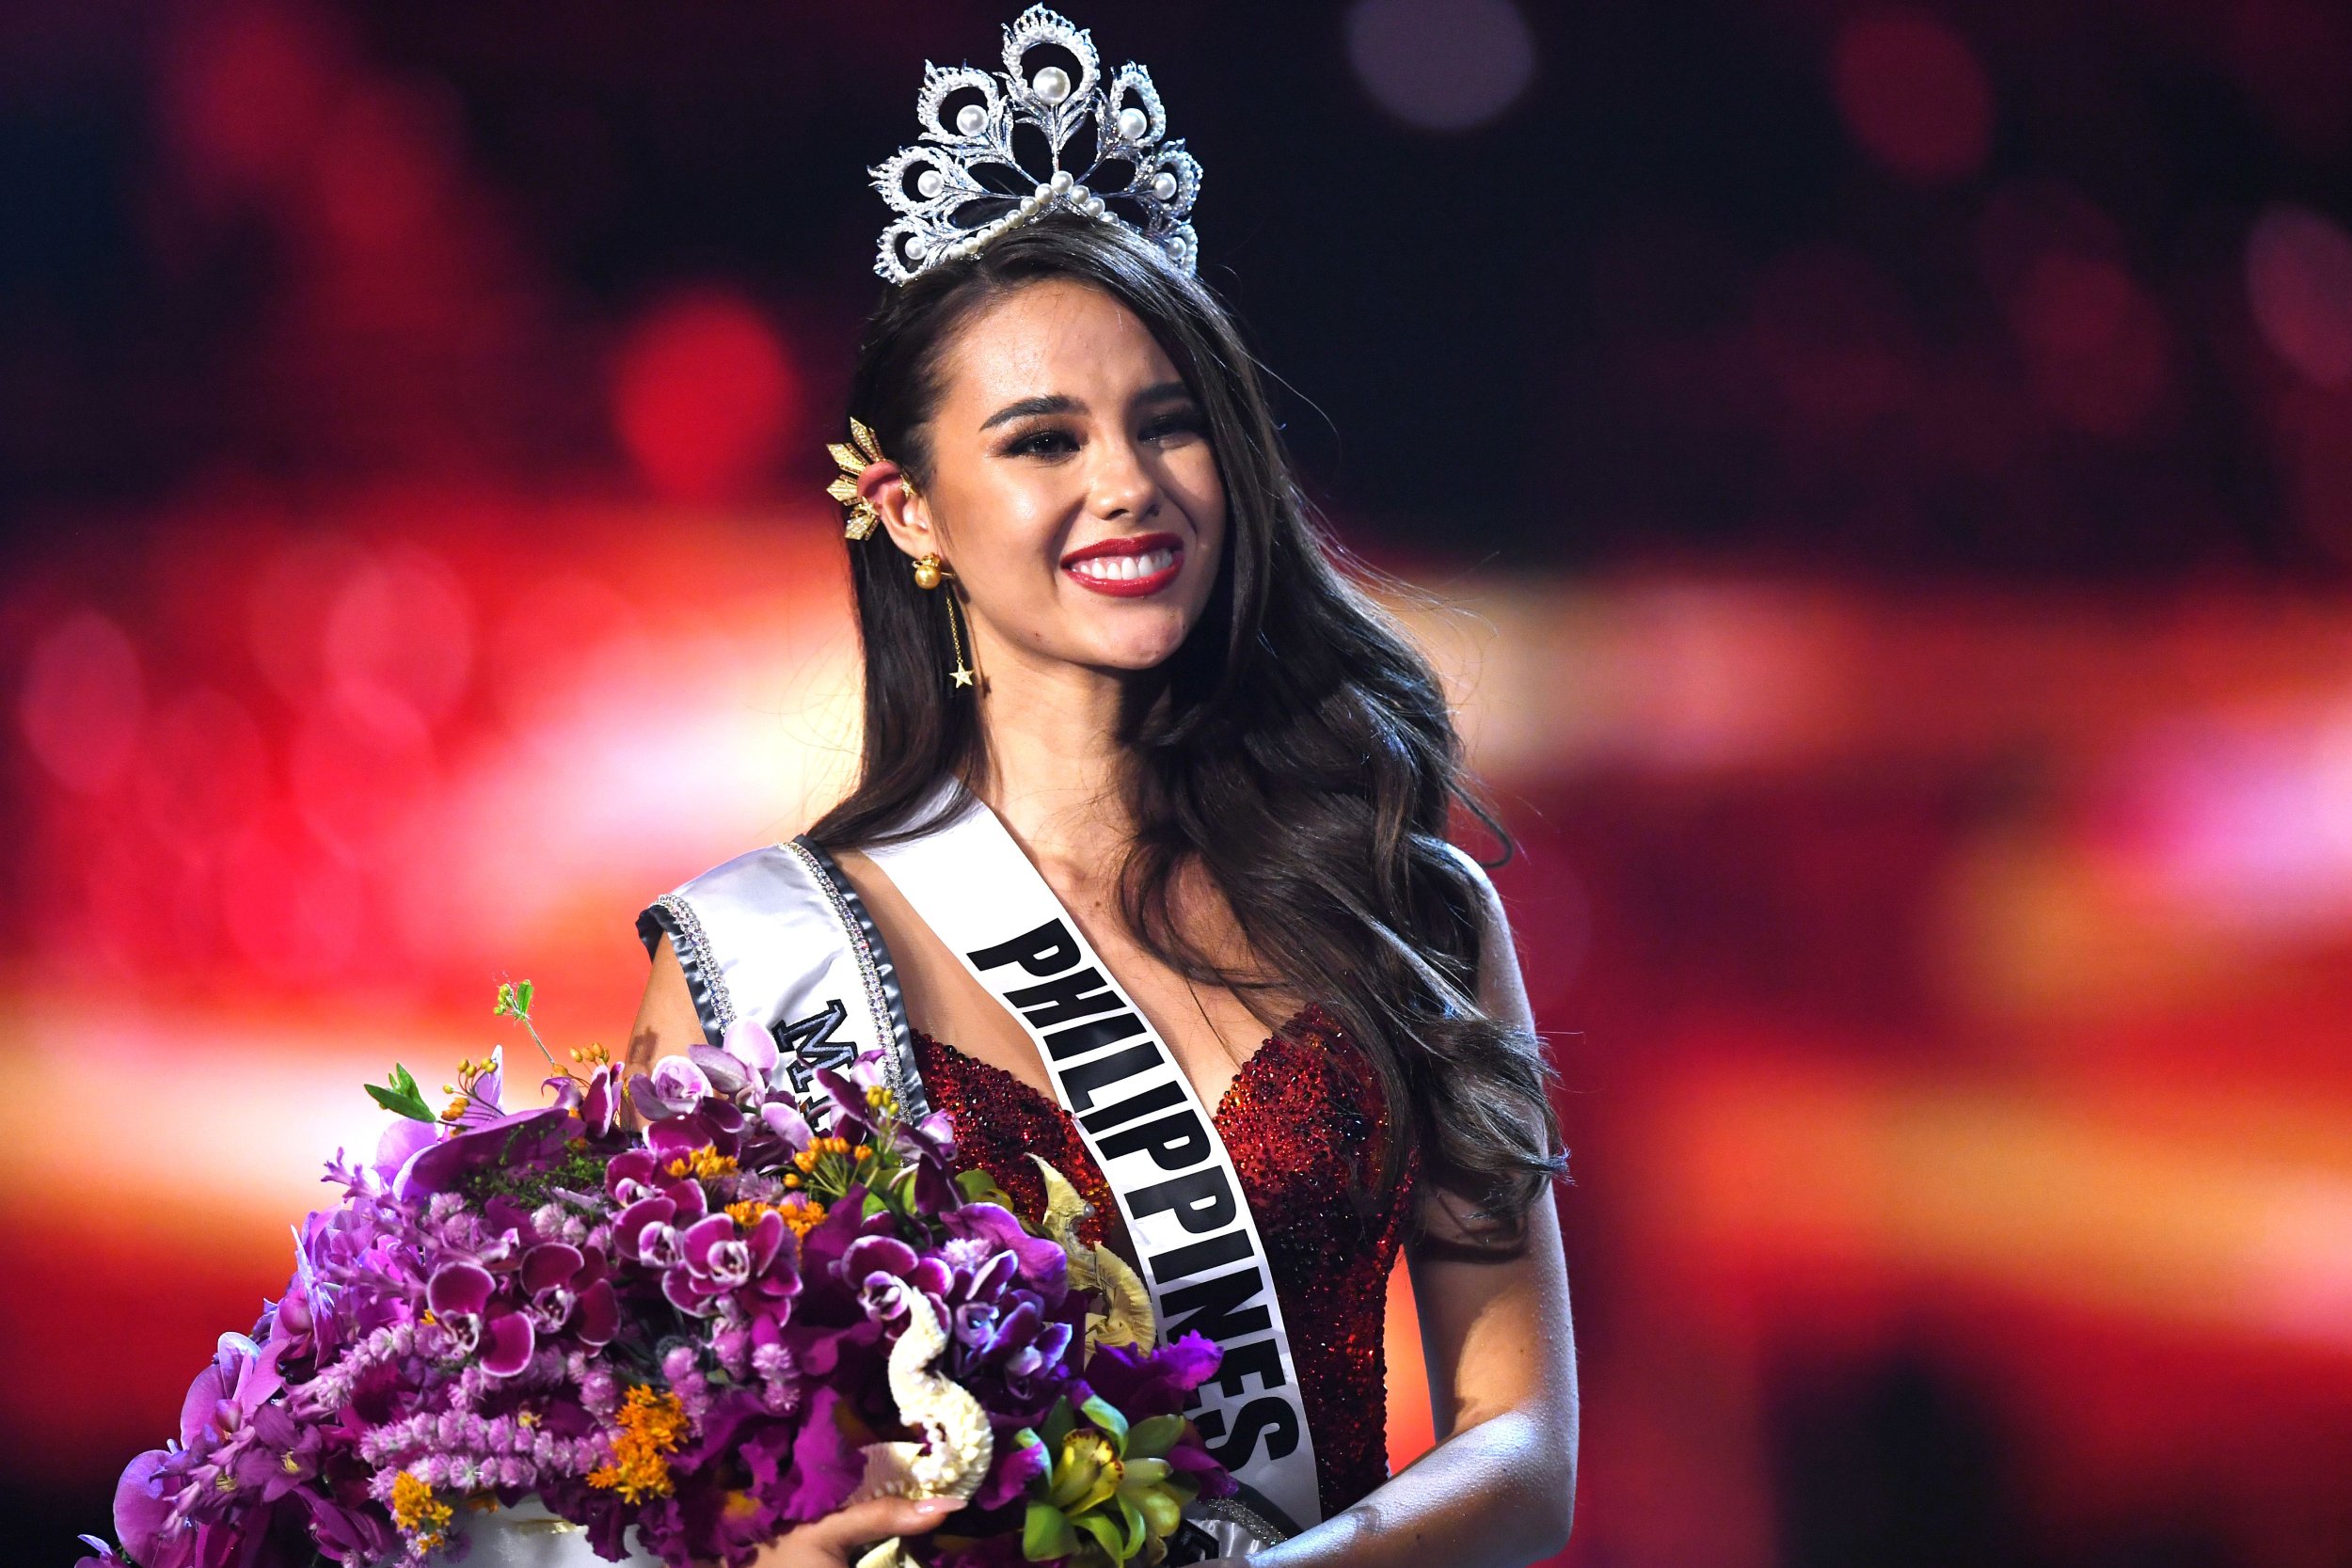 Miss. Мисс мира филиппинка 2018. Победительница Мисс Вселенная 2018 Катриона грей. Катриона Грэй, Филиппины. Мисс Вселенная филиппинка.